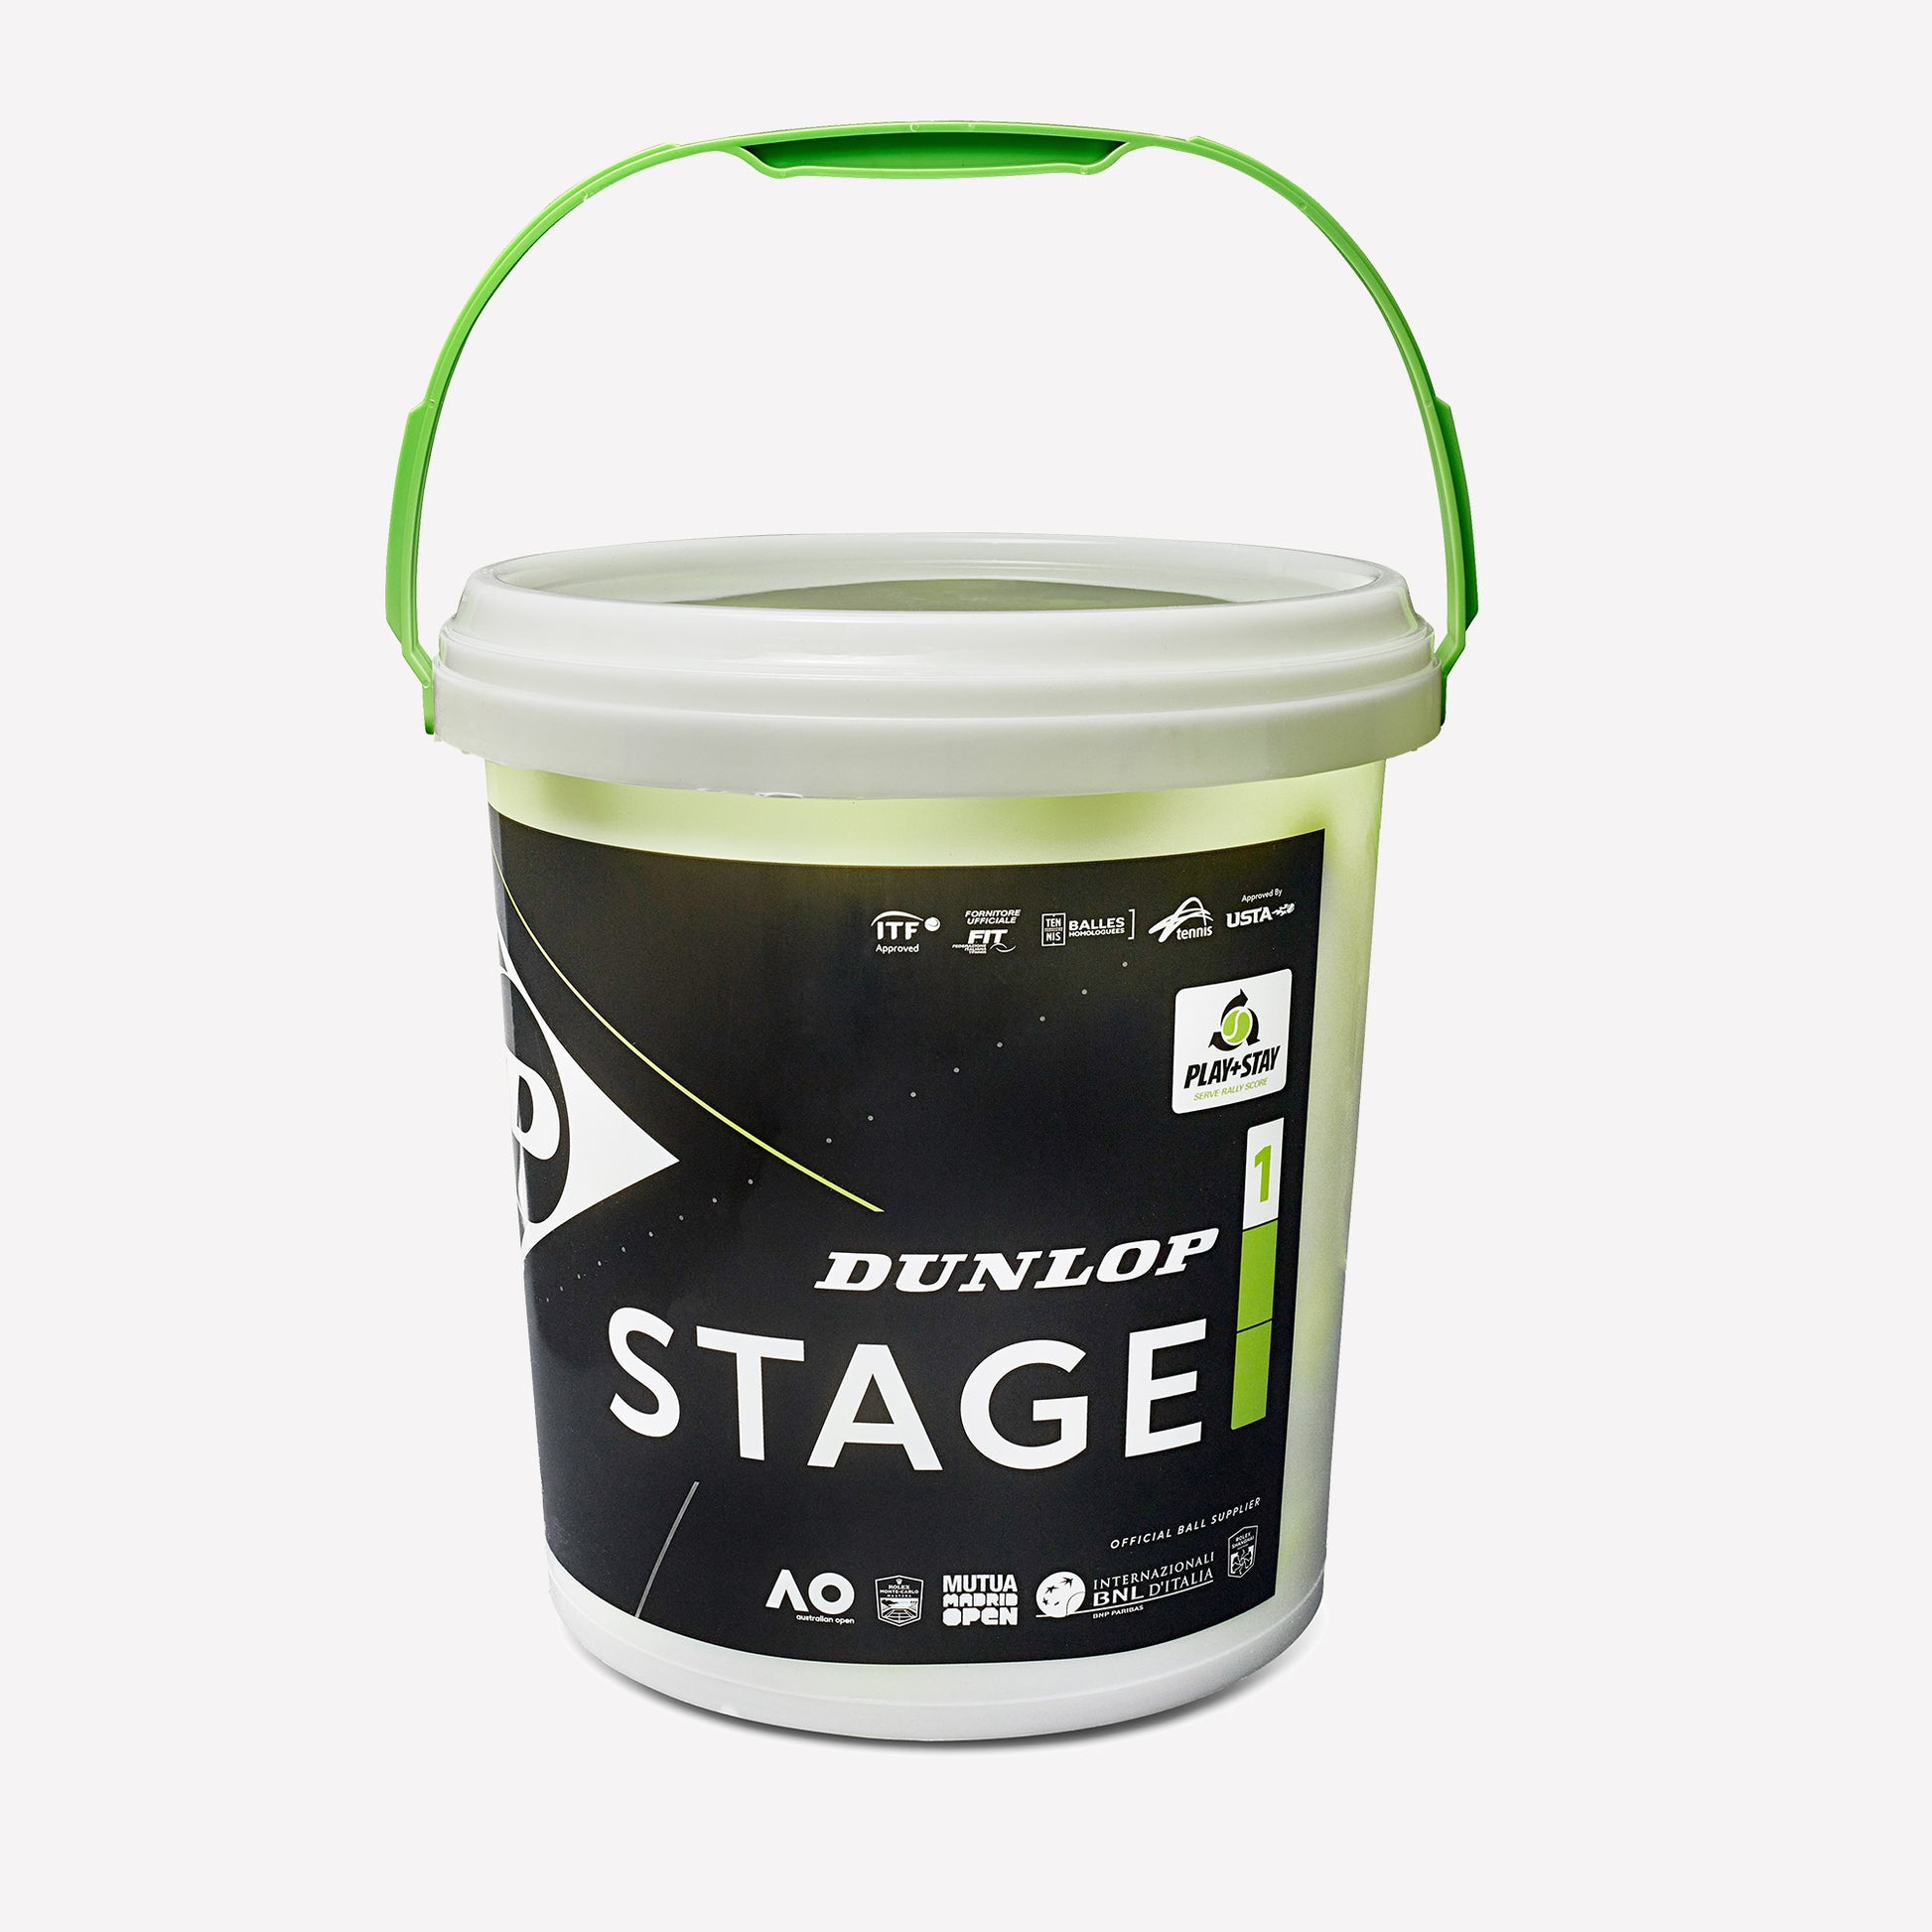 Dunlop Stage 1 Green 60 Tennis Balls Bucket 1